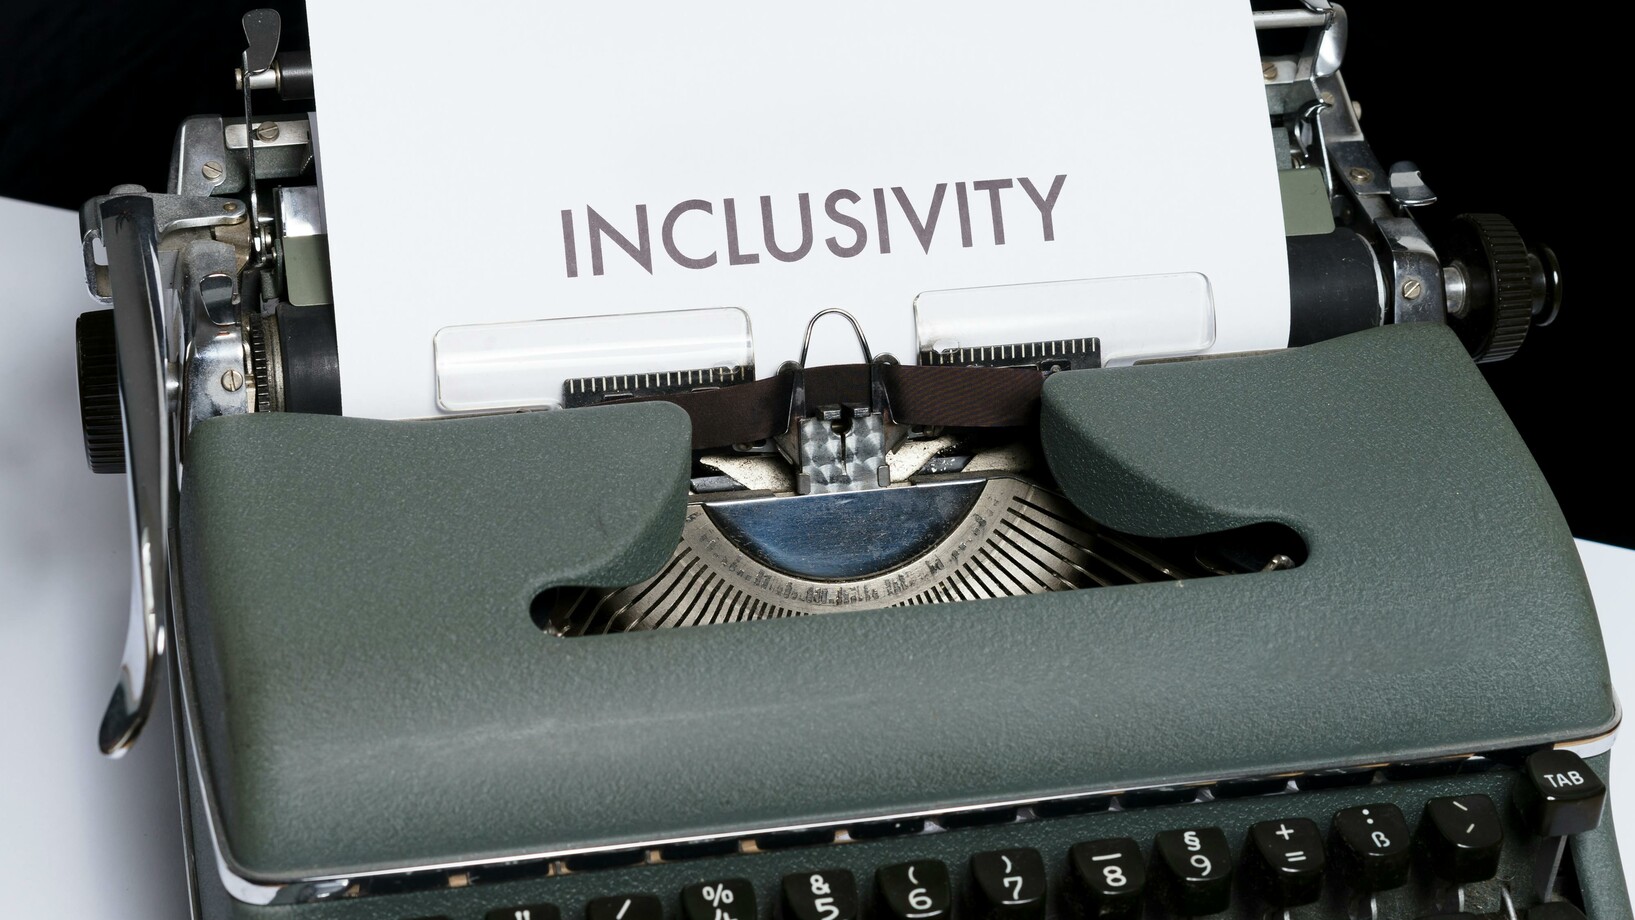 Weisses Papier mit Text "Inclusivity" auf Schreibmaschine